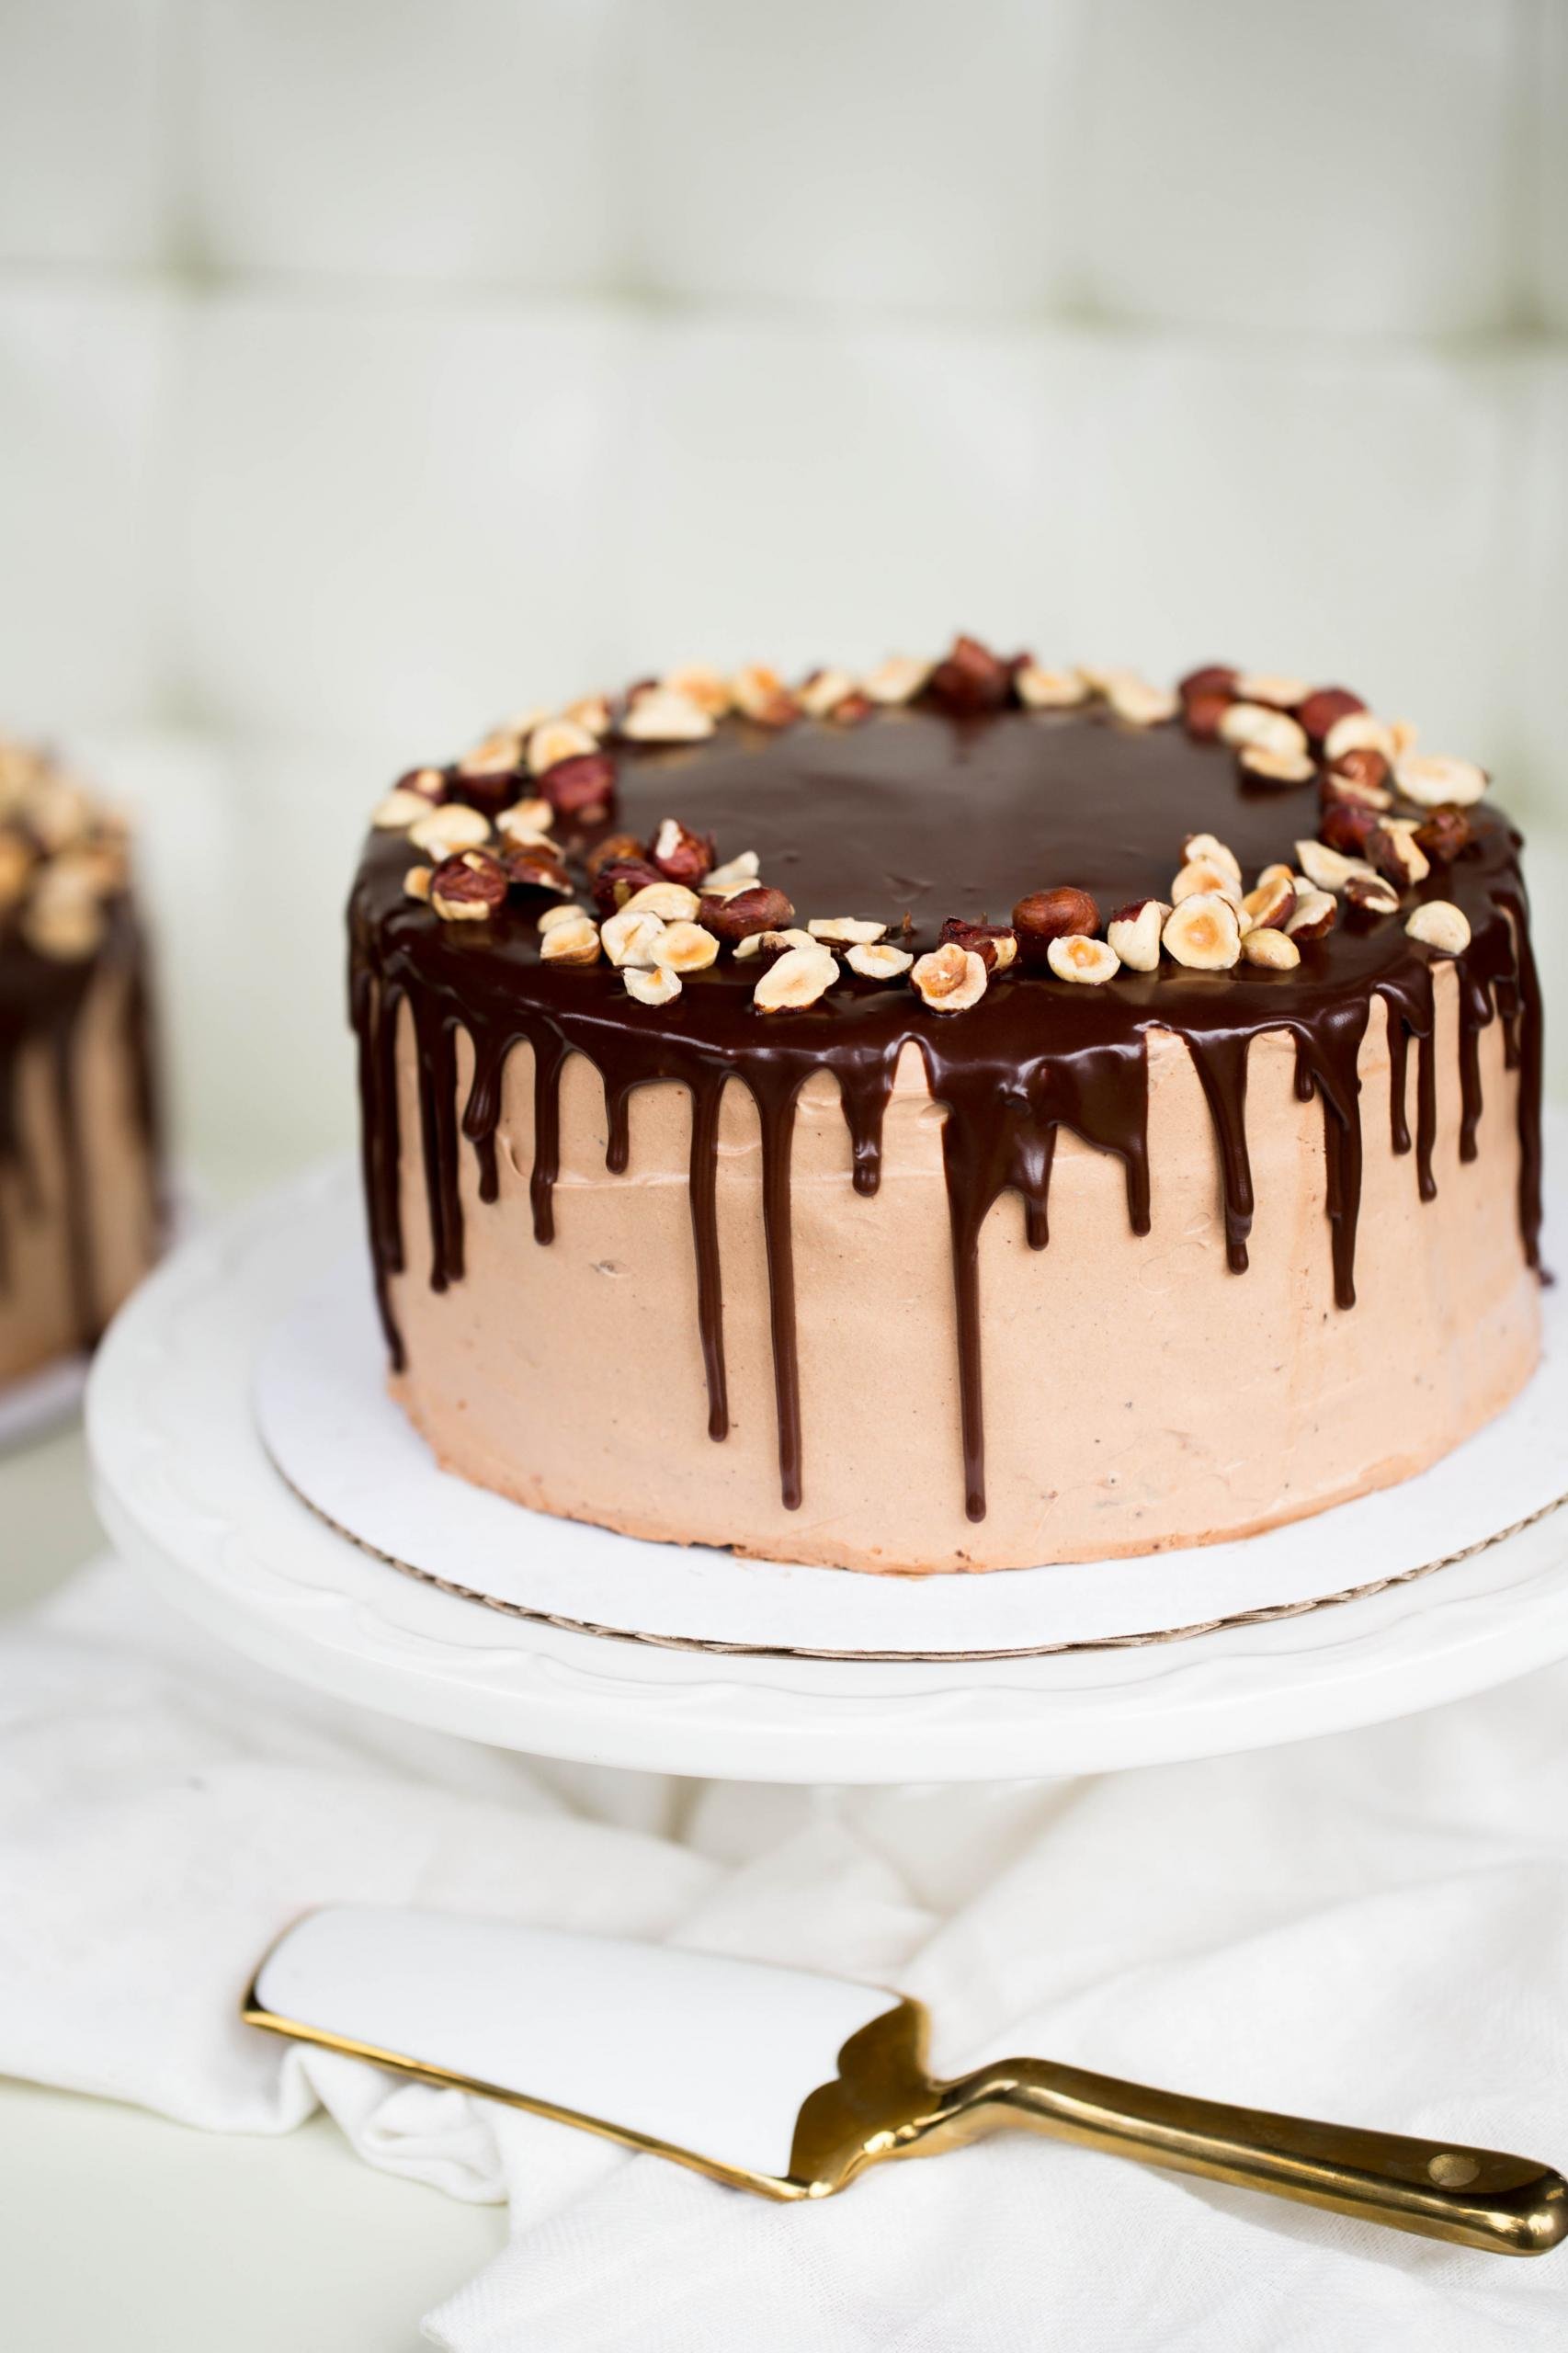 Chocolate Hazelnut Cake - Momsdish